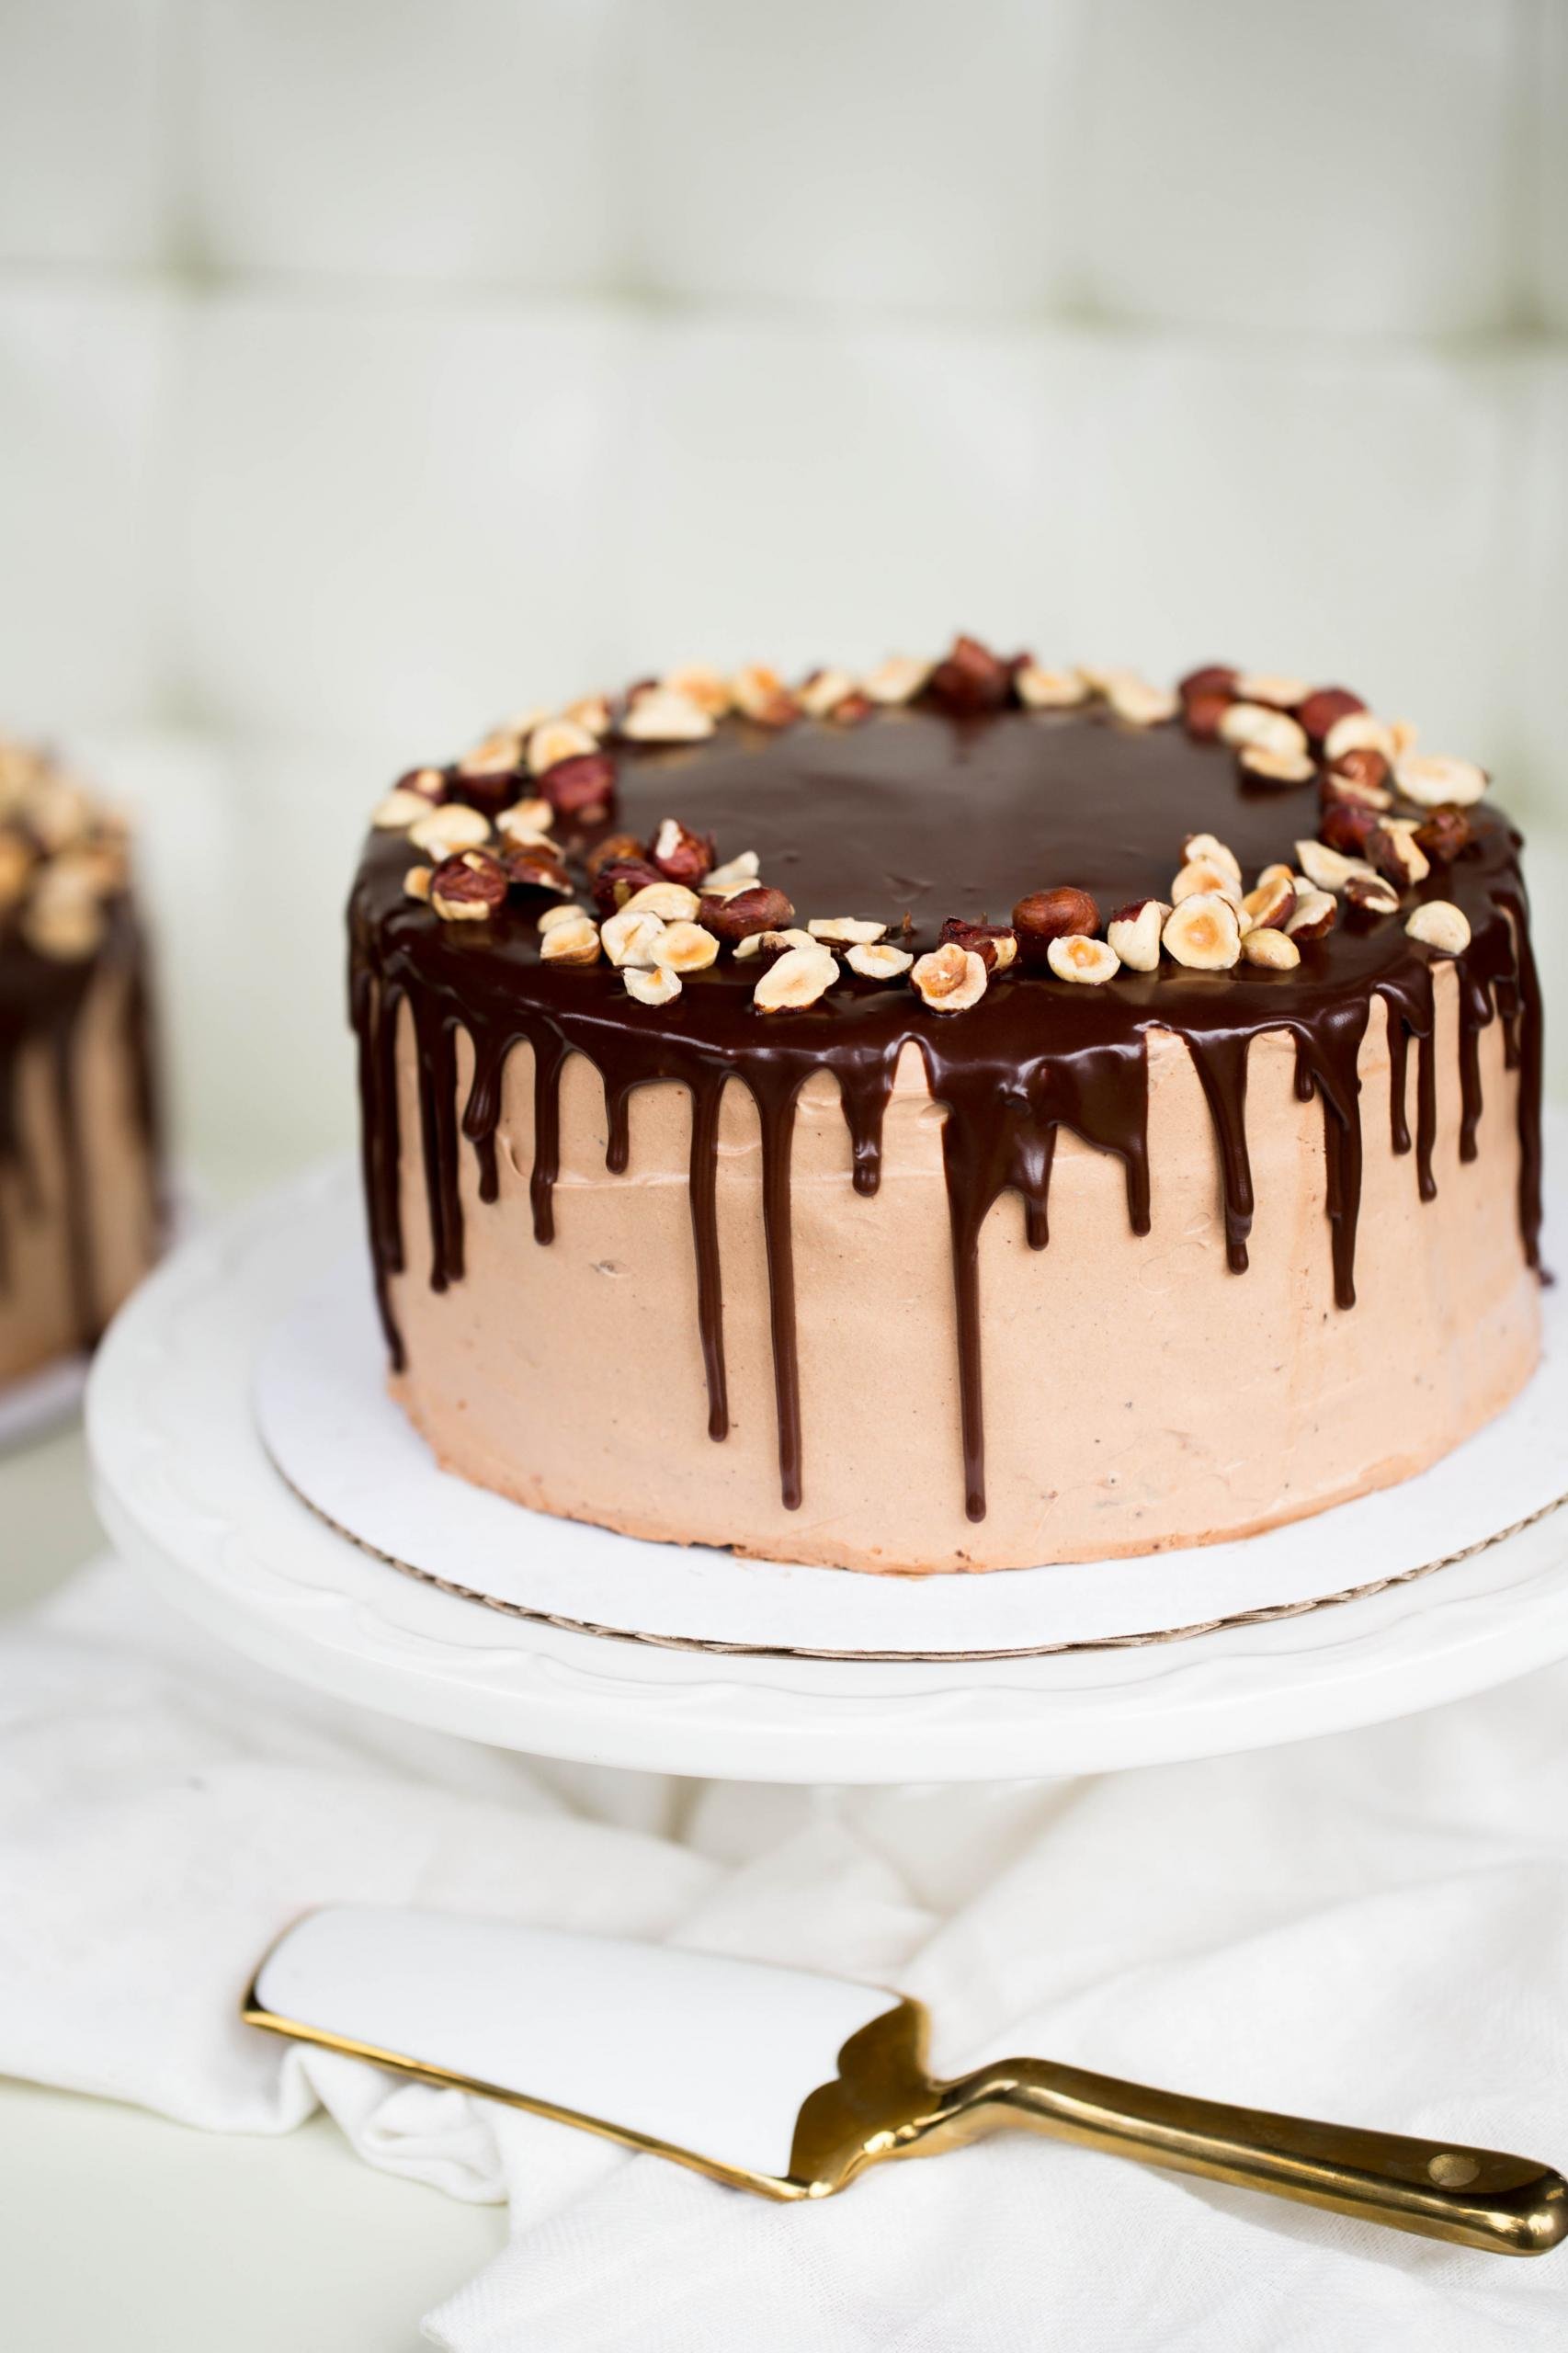 Chocolate Hazelnut Cake - Momsdish